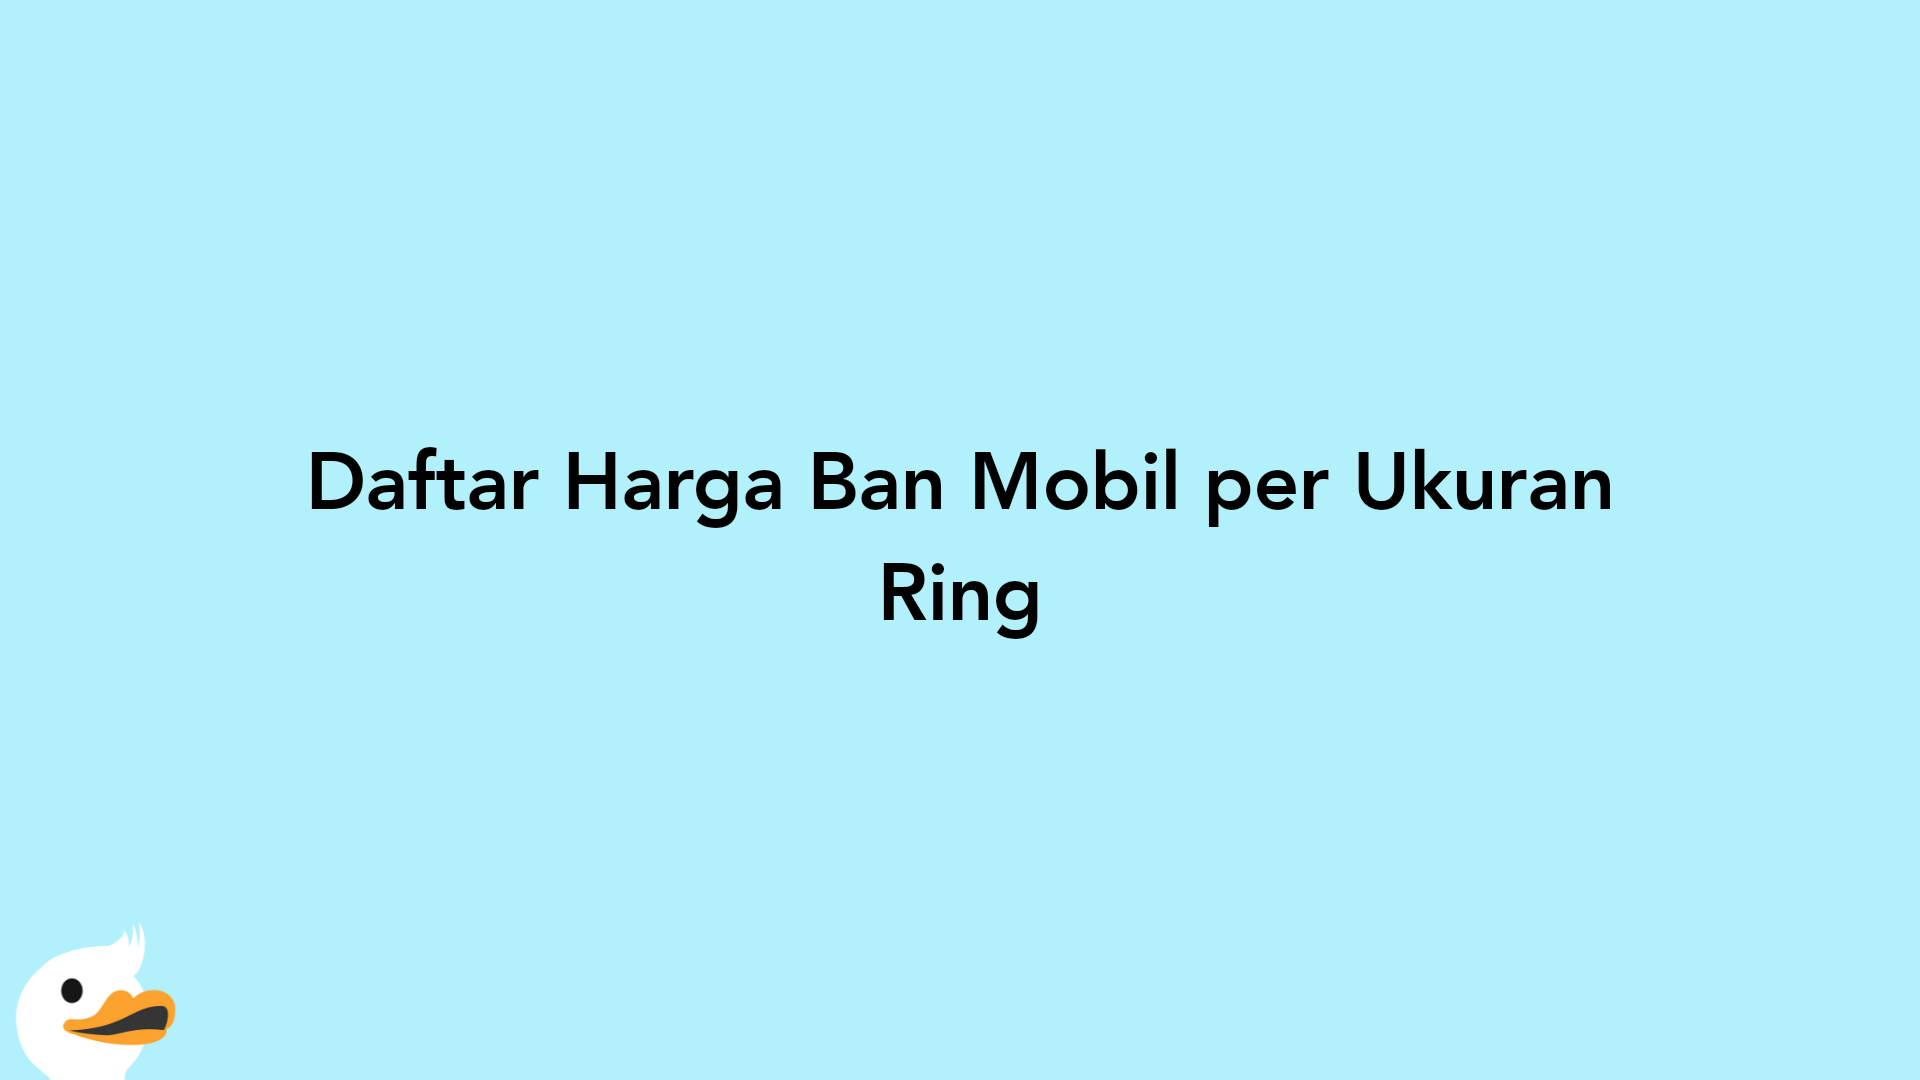 Daftar Harga Ban Mobil per Ukuran Ring